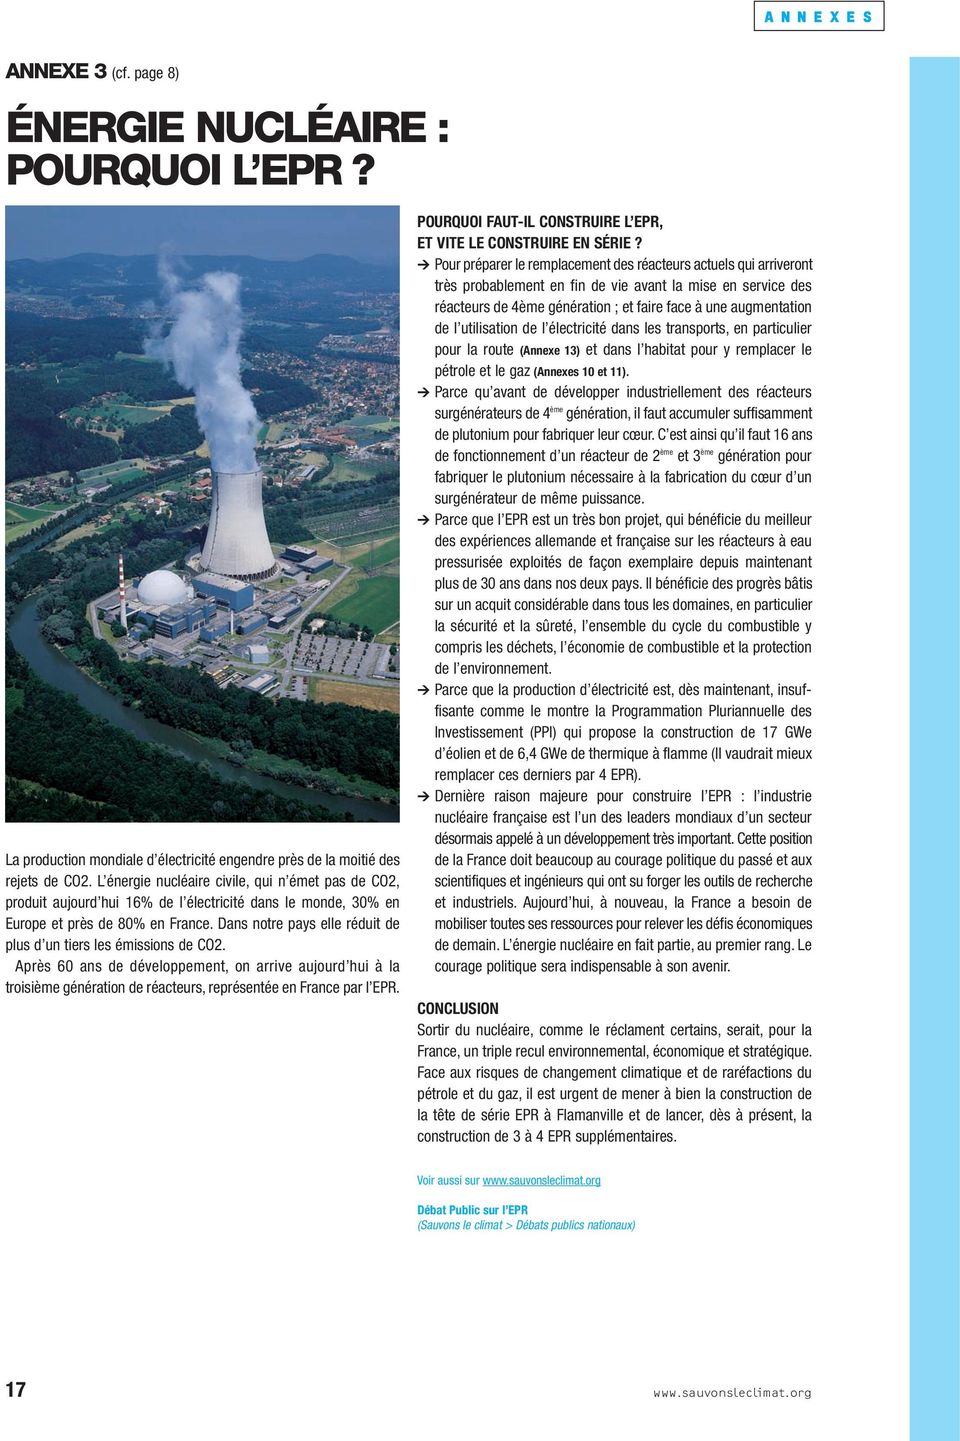 Dans notre pays elle réduit de plus d un tiers les émissions de CO2. Après 60 ans de développement, on arrive aujourd hui à la troisième génération de réacteurs, représentée en France par l EPR.